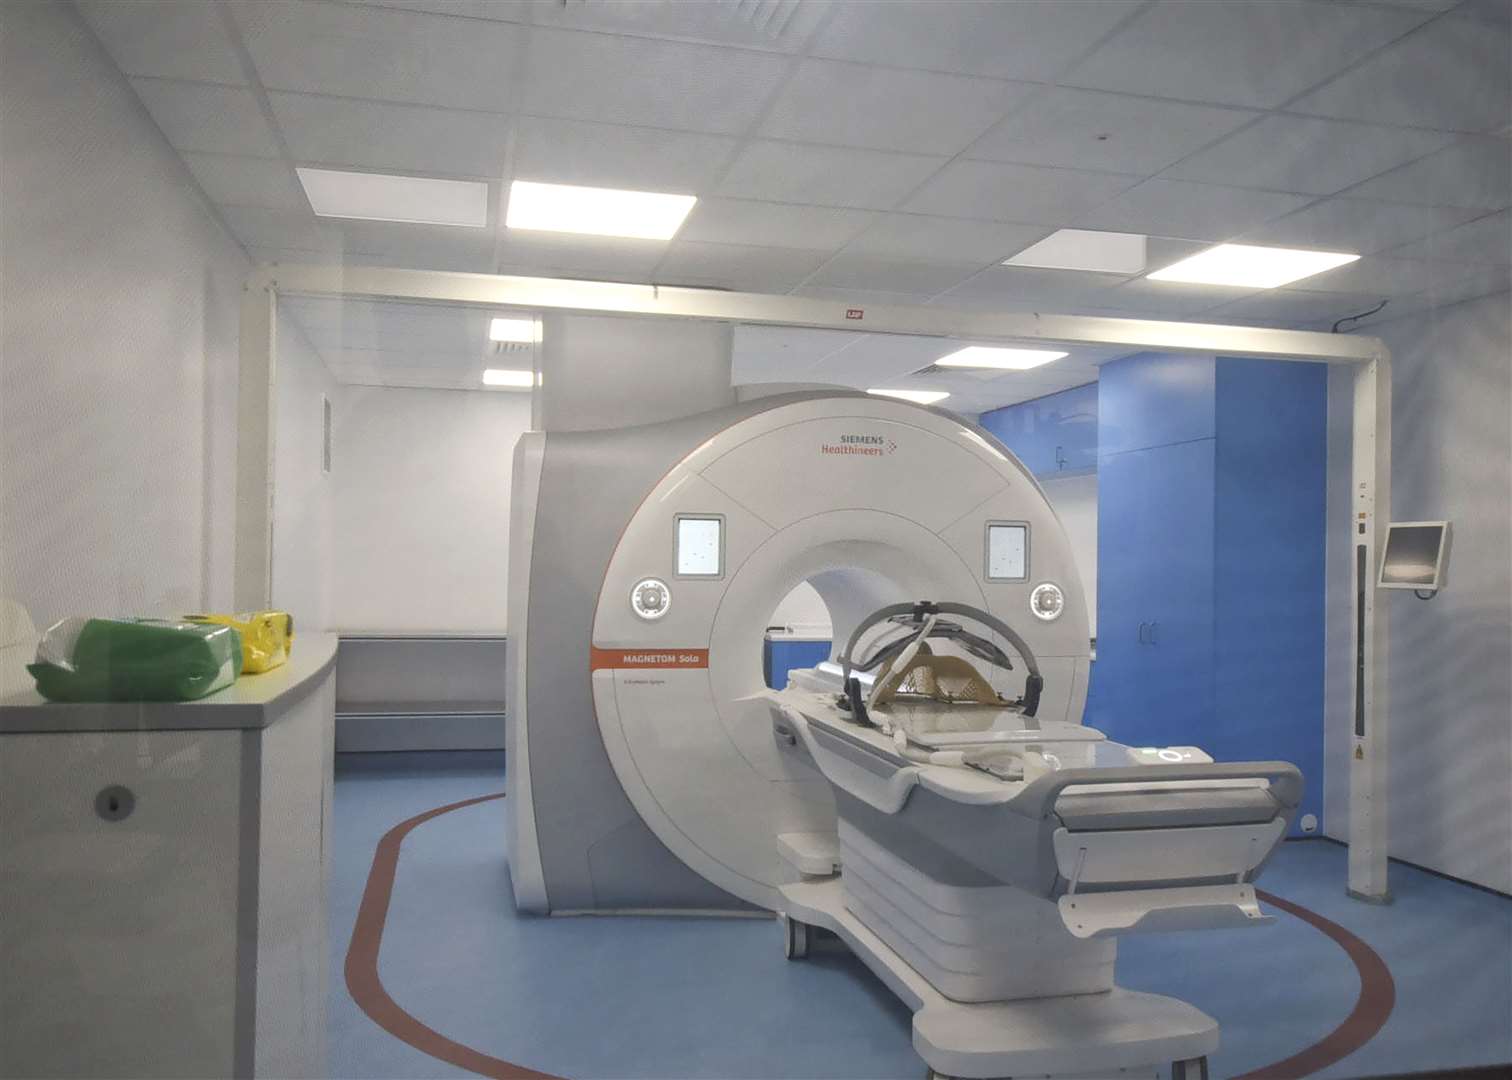 An MRI scanner (Medical Illustration/NHSGGC/PA)